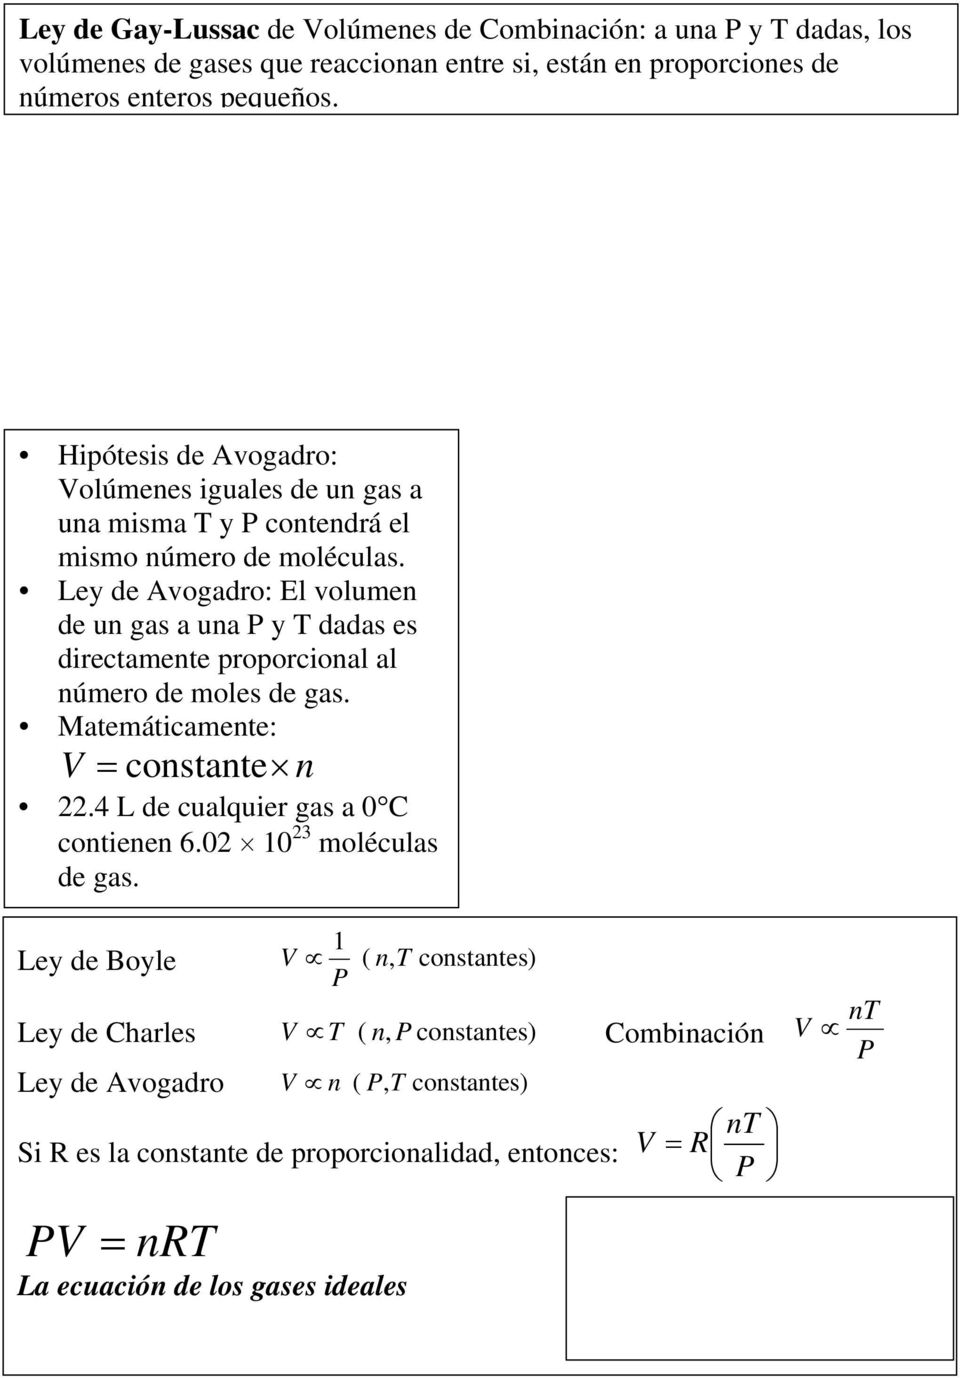 Ley de Avogadro: El volumen de un gas a una y T dadas es directamente proporcional al número de moles de gas. Matemáticamente: constante n.